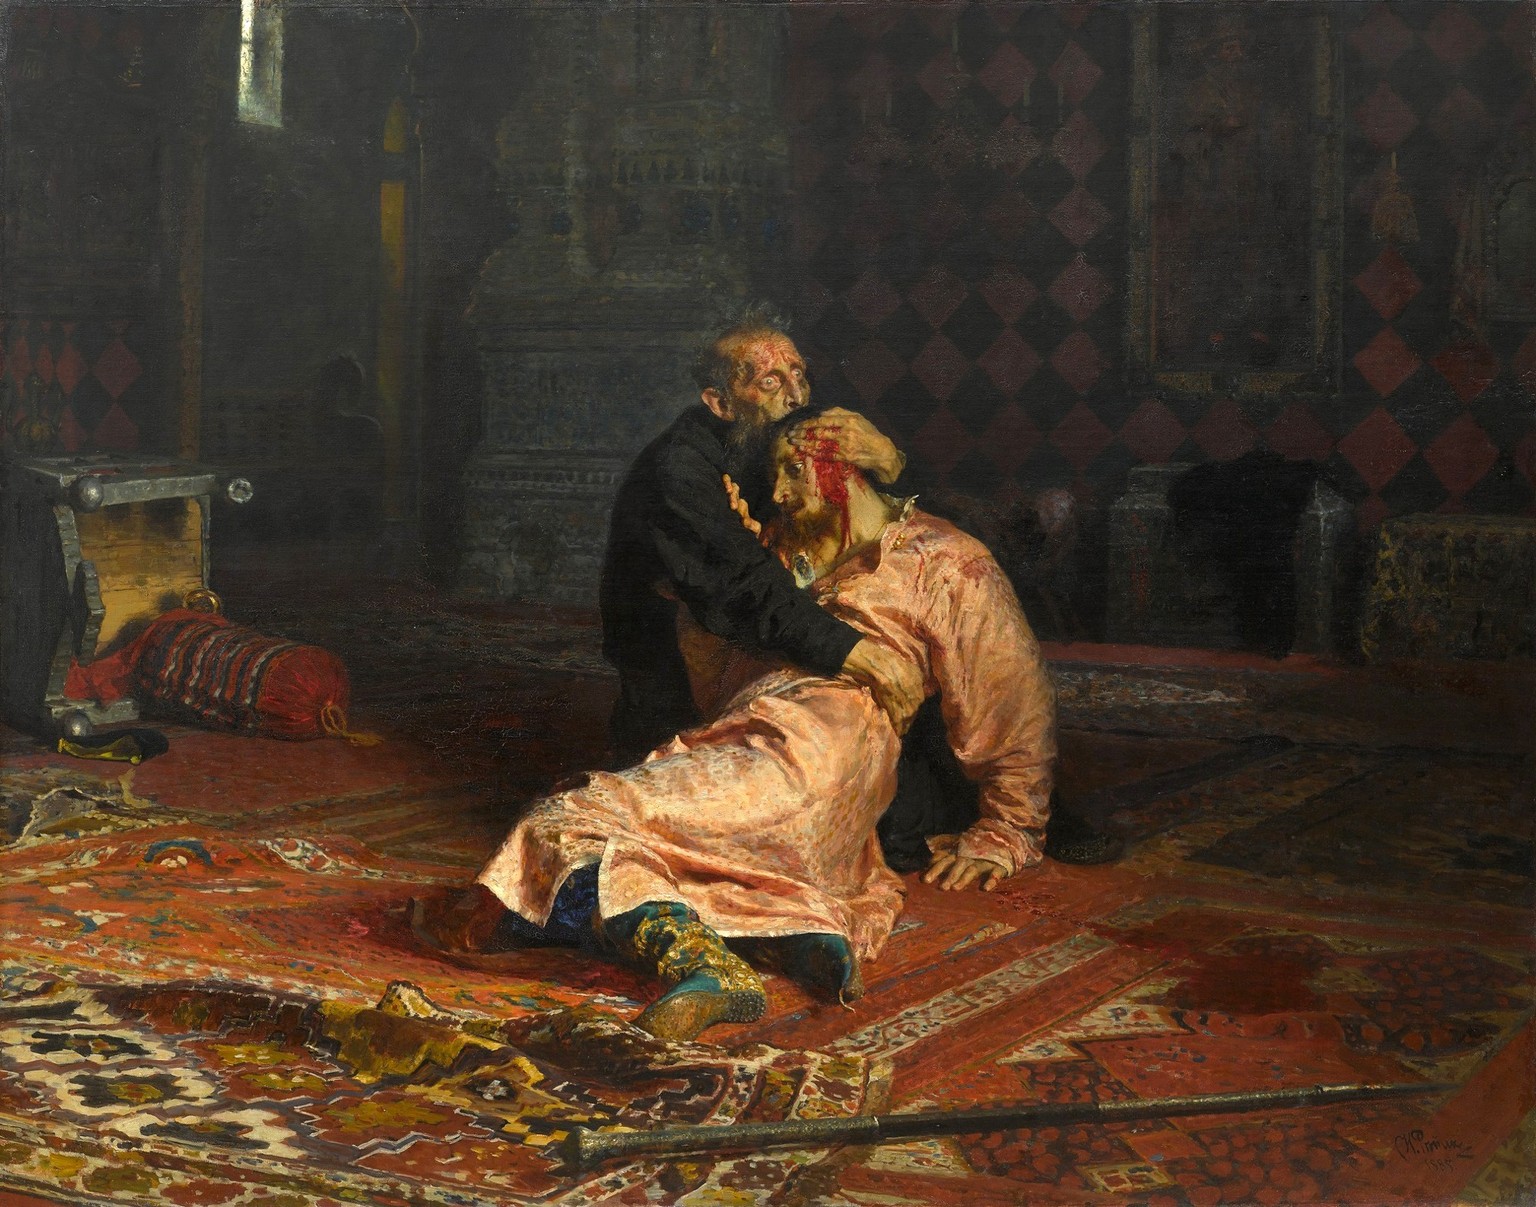 Weitere Einzelheiten
Ilja Repin: Iwan der Schreckliche und sein Sohn. Gemälde aus dem Jahr 1885